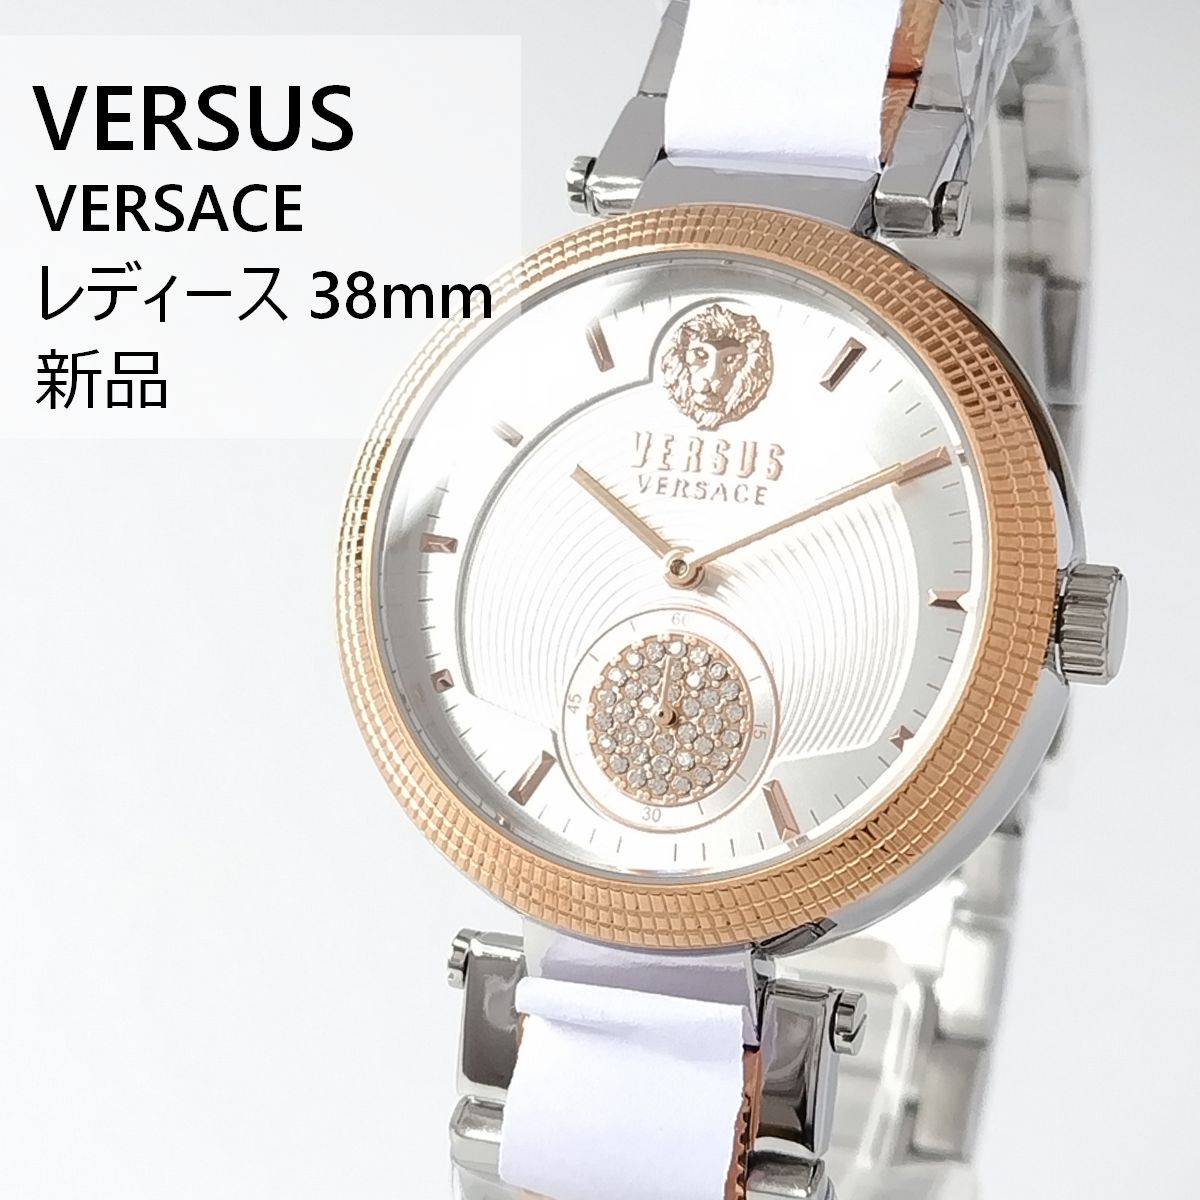 ホワイト/ゴールド新品VERSUS VERSACEレディース腕時計38mm - メルカリ